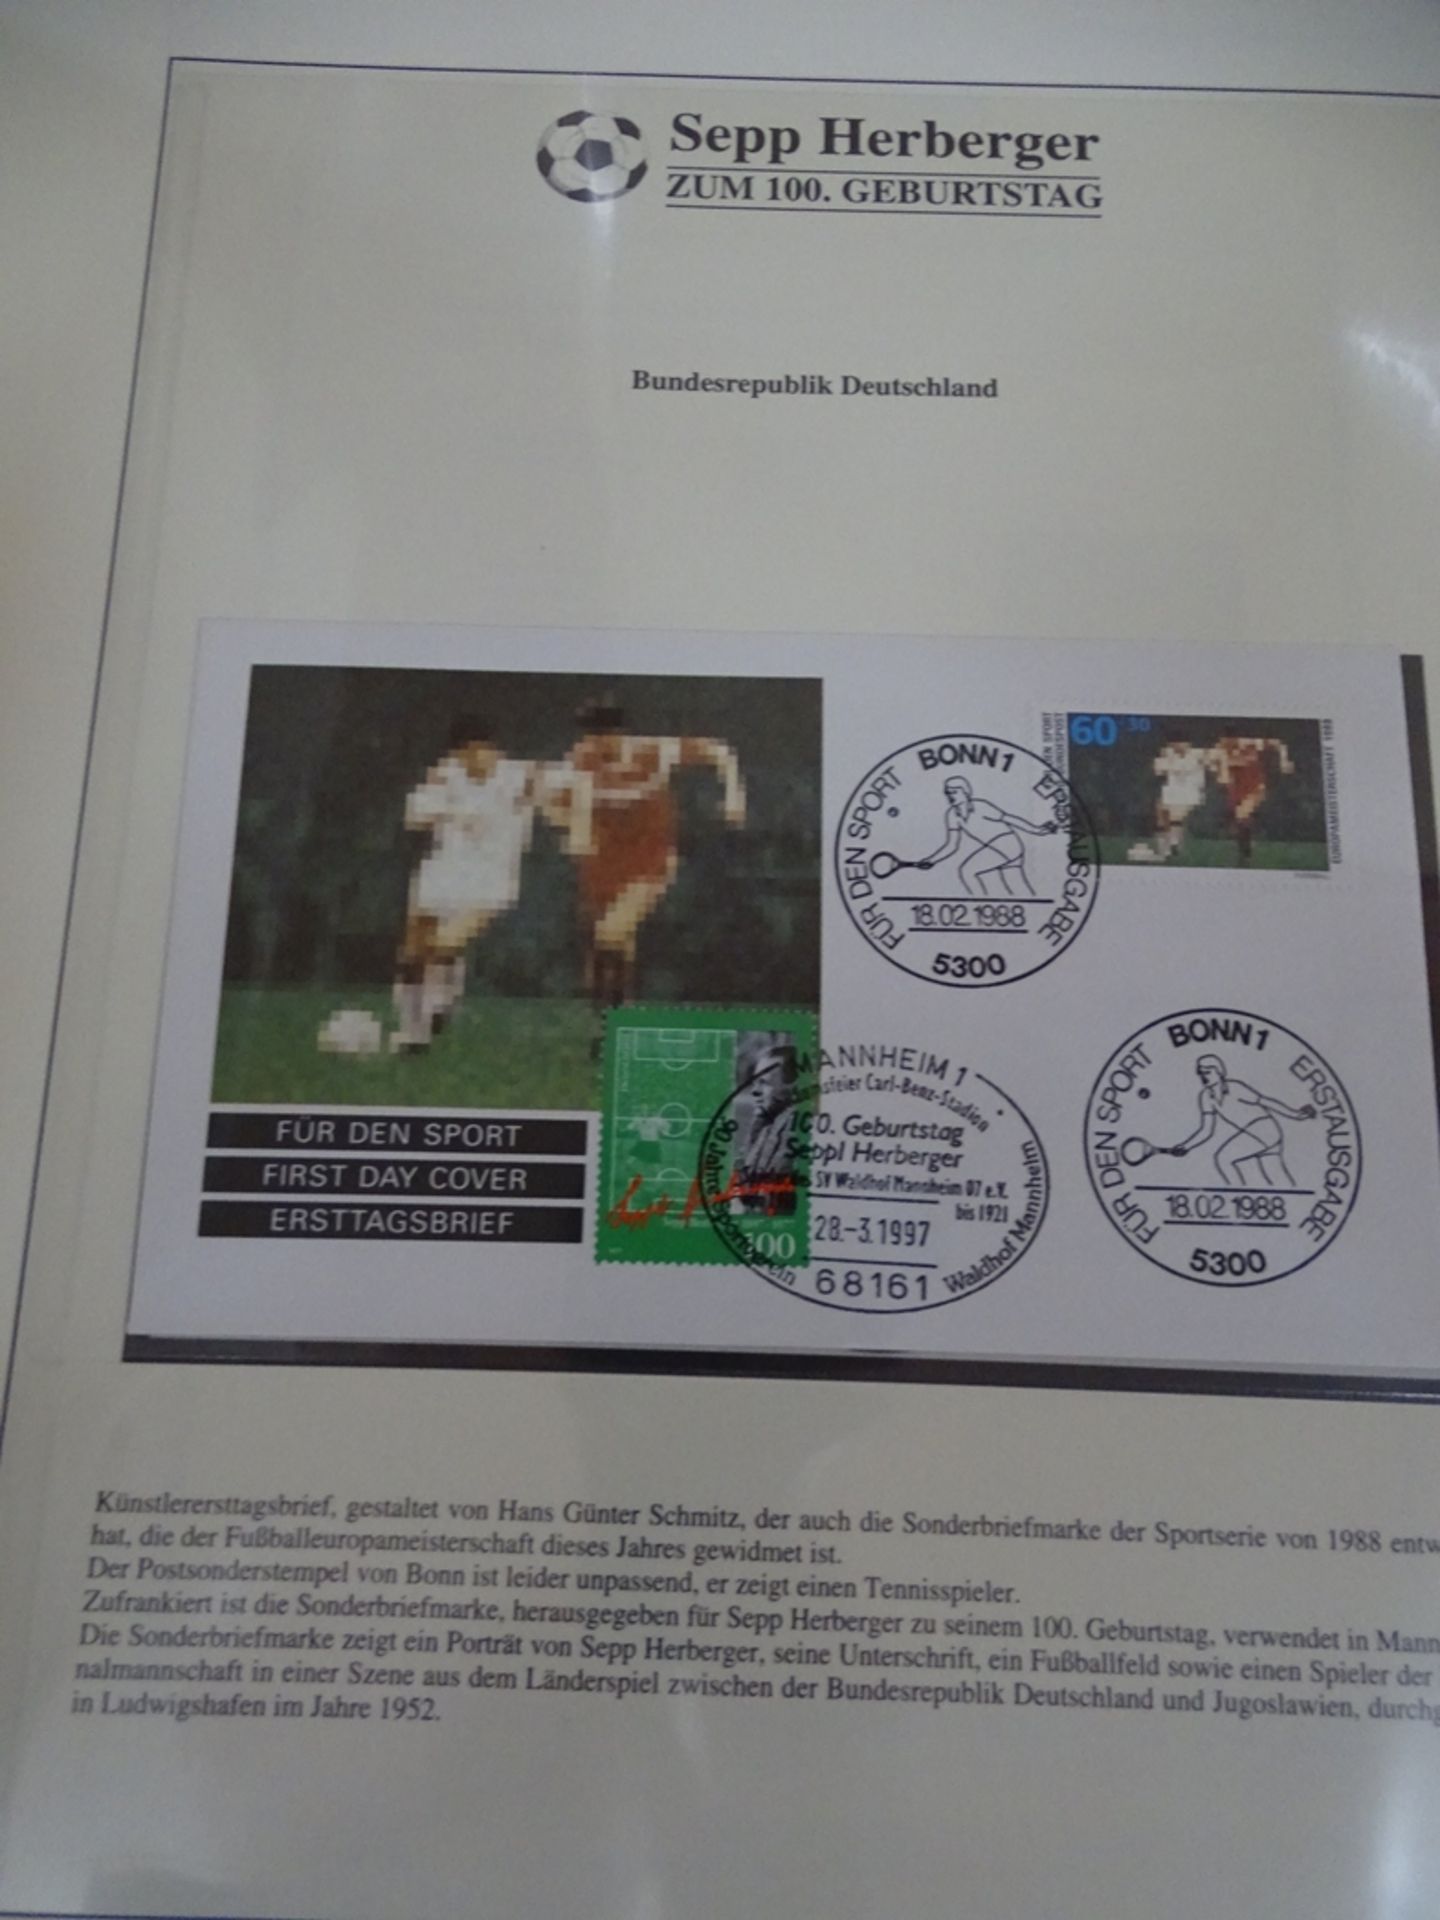 4x lomplette Linbder Ordner  "Italia 90" Briefmarkenalbum zur Fussball- Weltmeisterschaft, official - Bild 5 aus 13